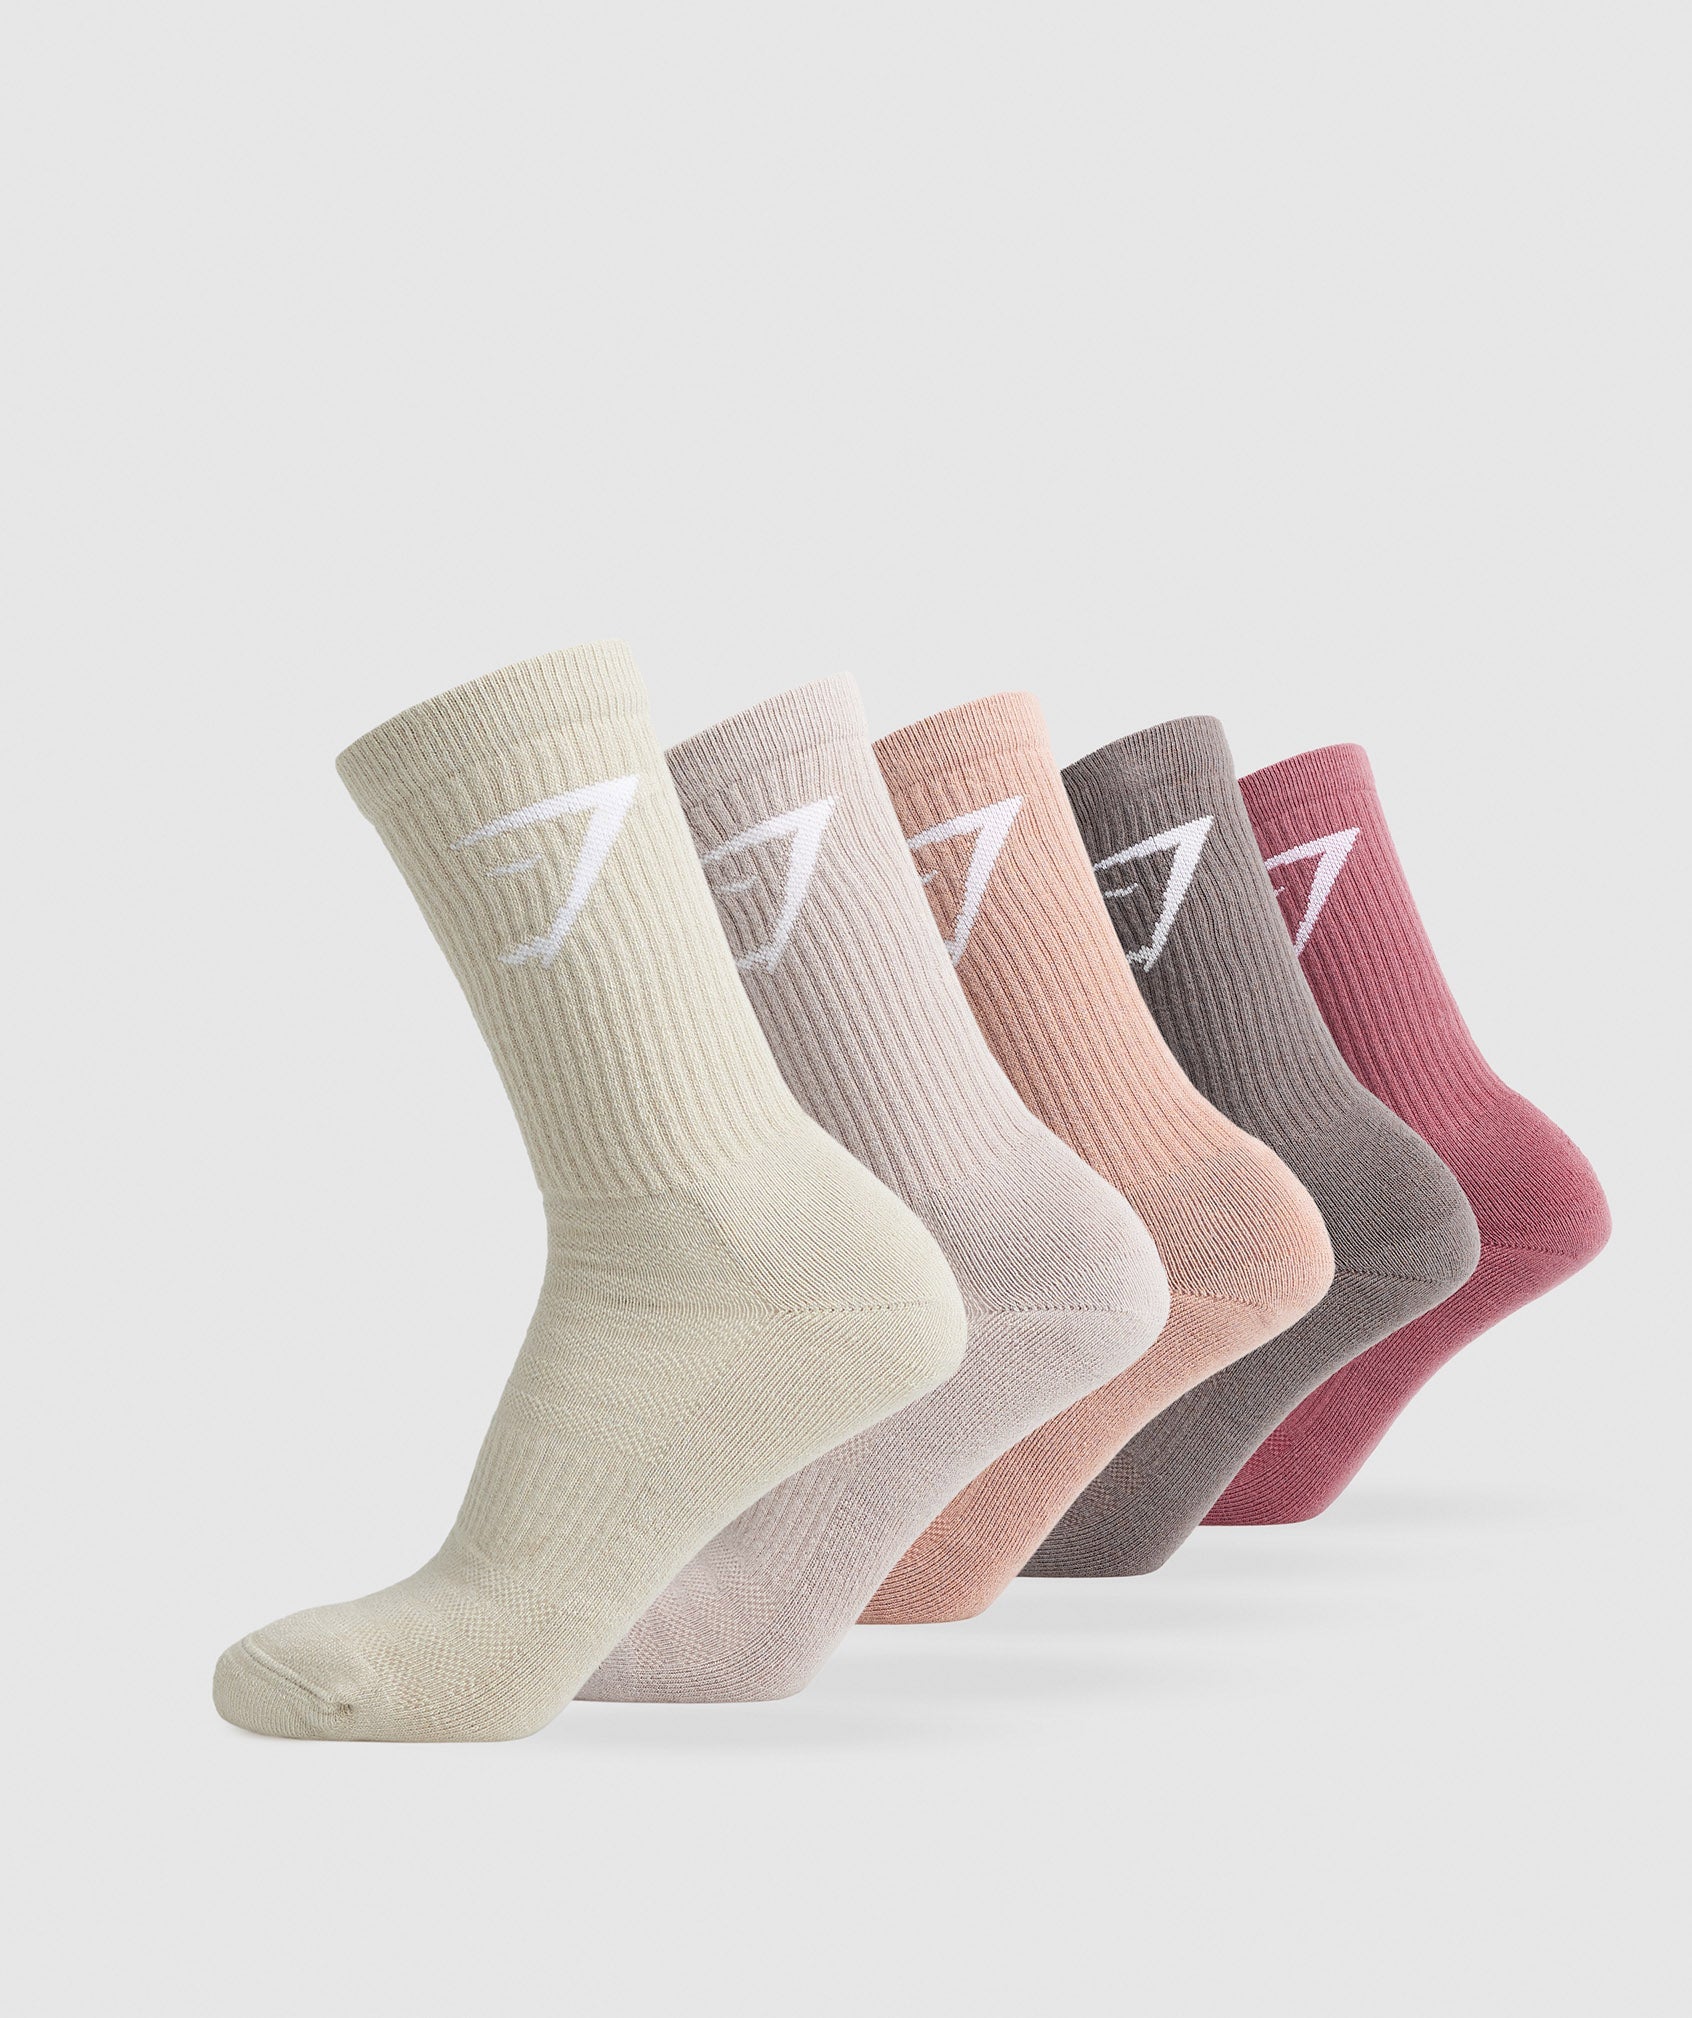 Gymshark Crew Socks 5pk - Berry/Brown/Pink/Pink/Brown